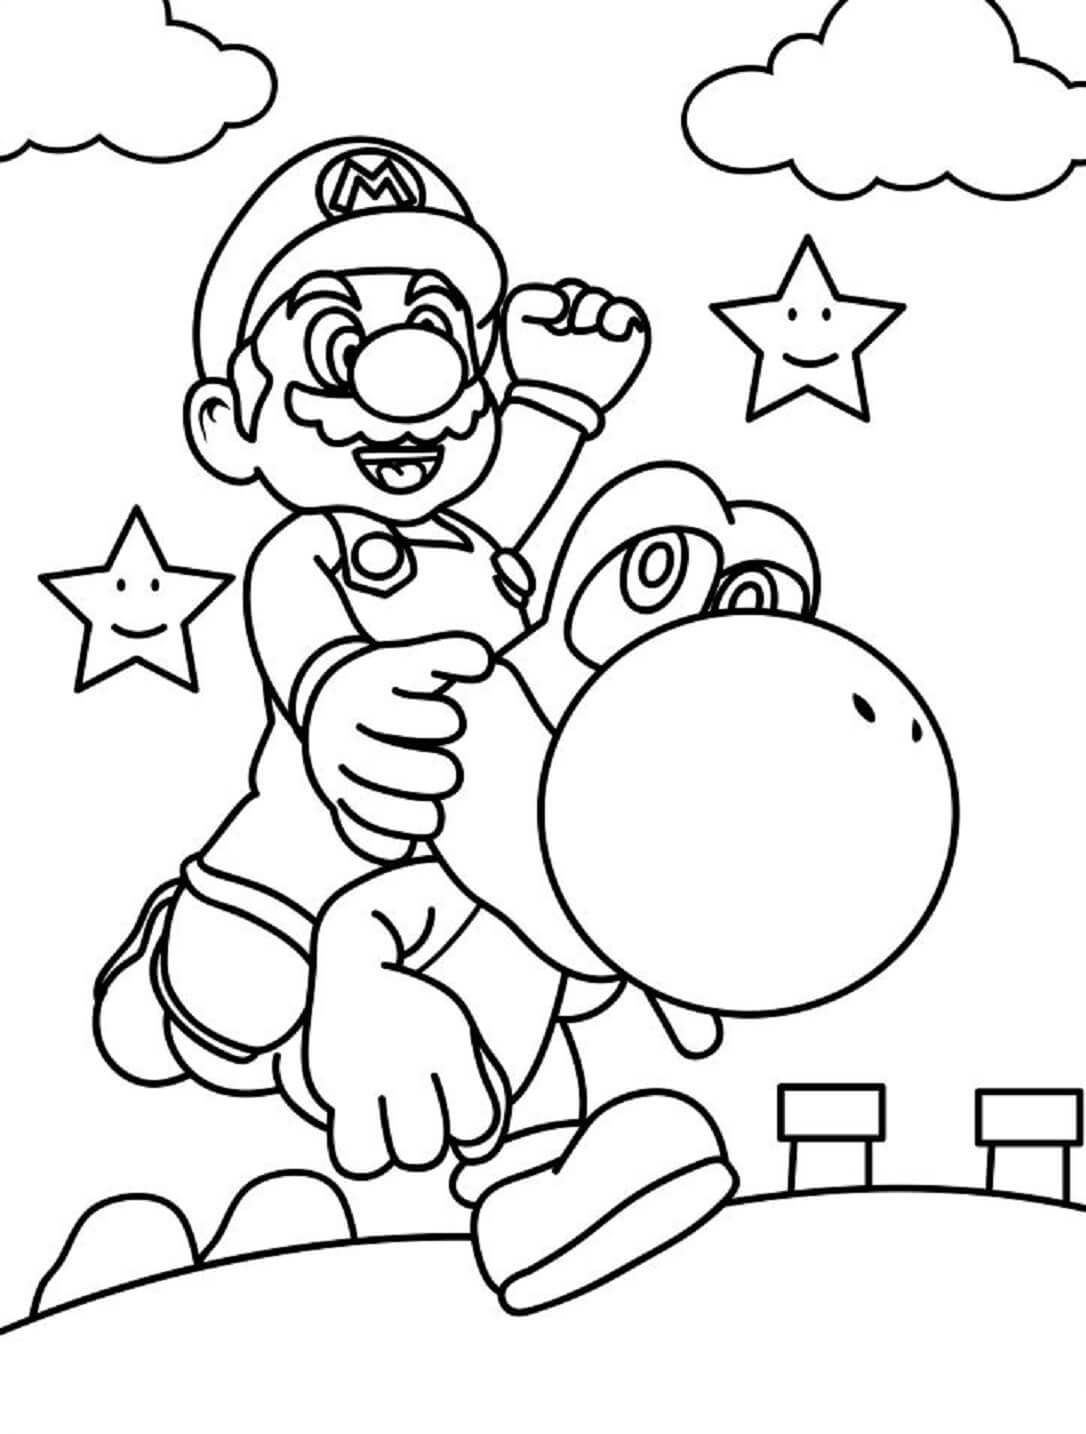 Dibujos de Divertido Mario Montando Yoshi para colorear